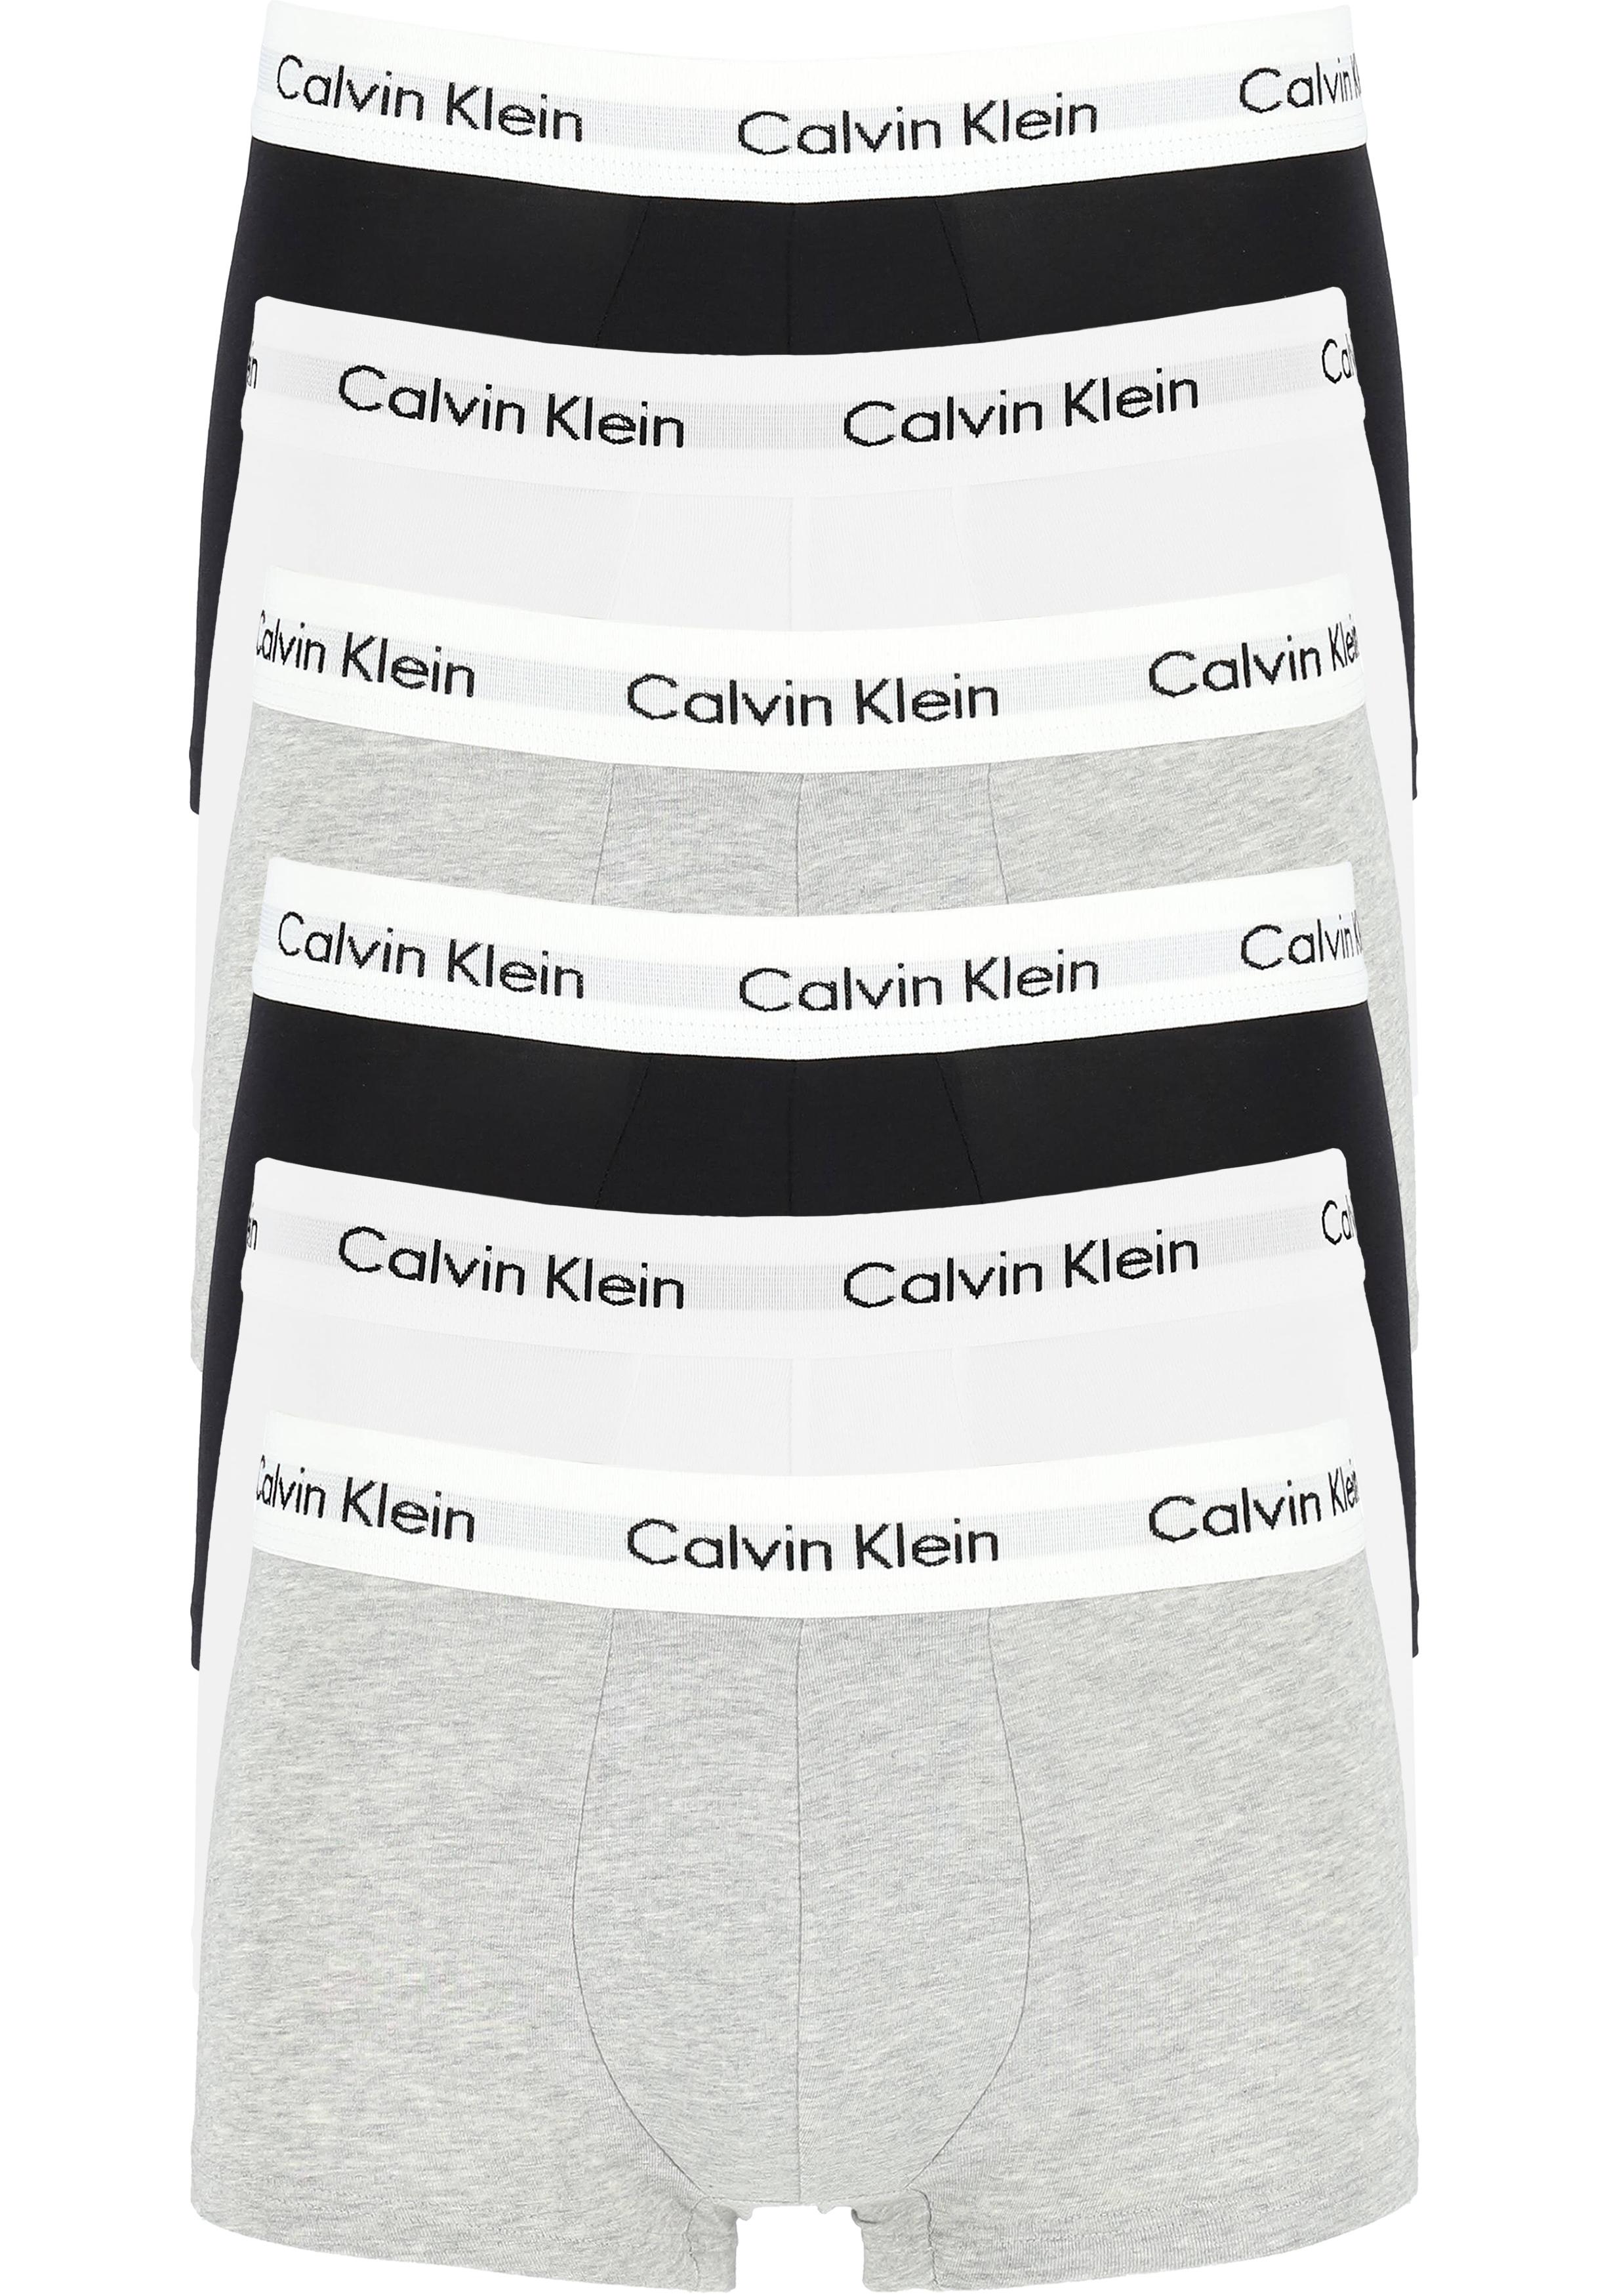 Actie 6-pack: Calvin Klein low rise trunks, lage heren boxers kort, zwart - grijs en wit